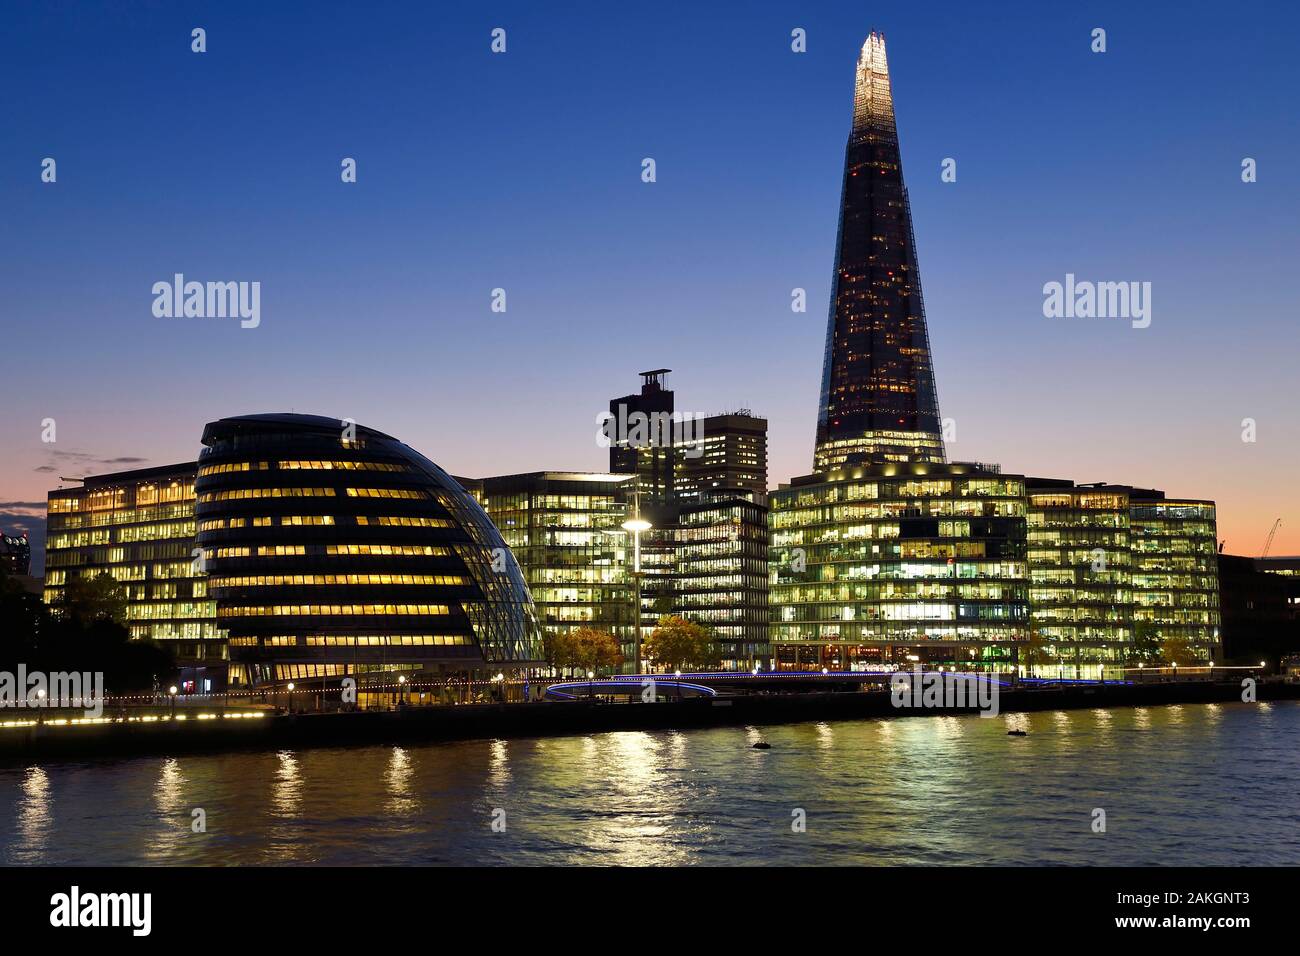 Regno Unito, Londra, distretto di Southwark, Londra London Bridge quarter, il Municipio dall'architetto Norman Foster, più lo sviluppo di Londra e la Shard London Bridge Tower dall'architetto Renzo Piano, il più alto nella torre di Londra Foto Stock